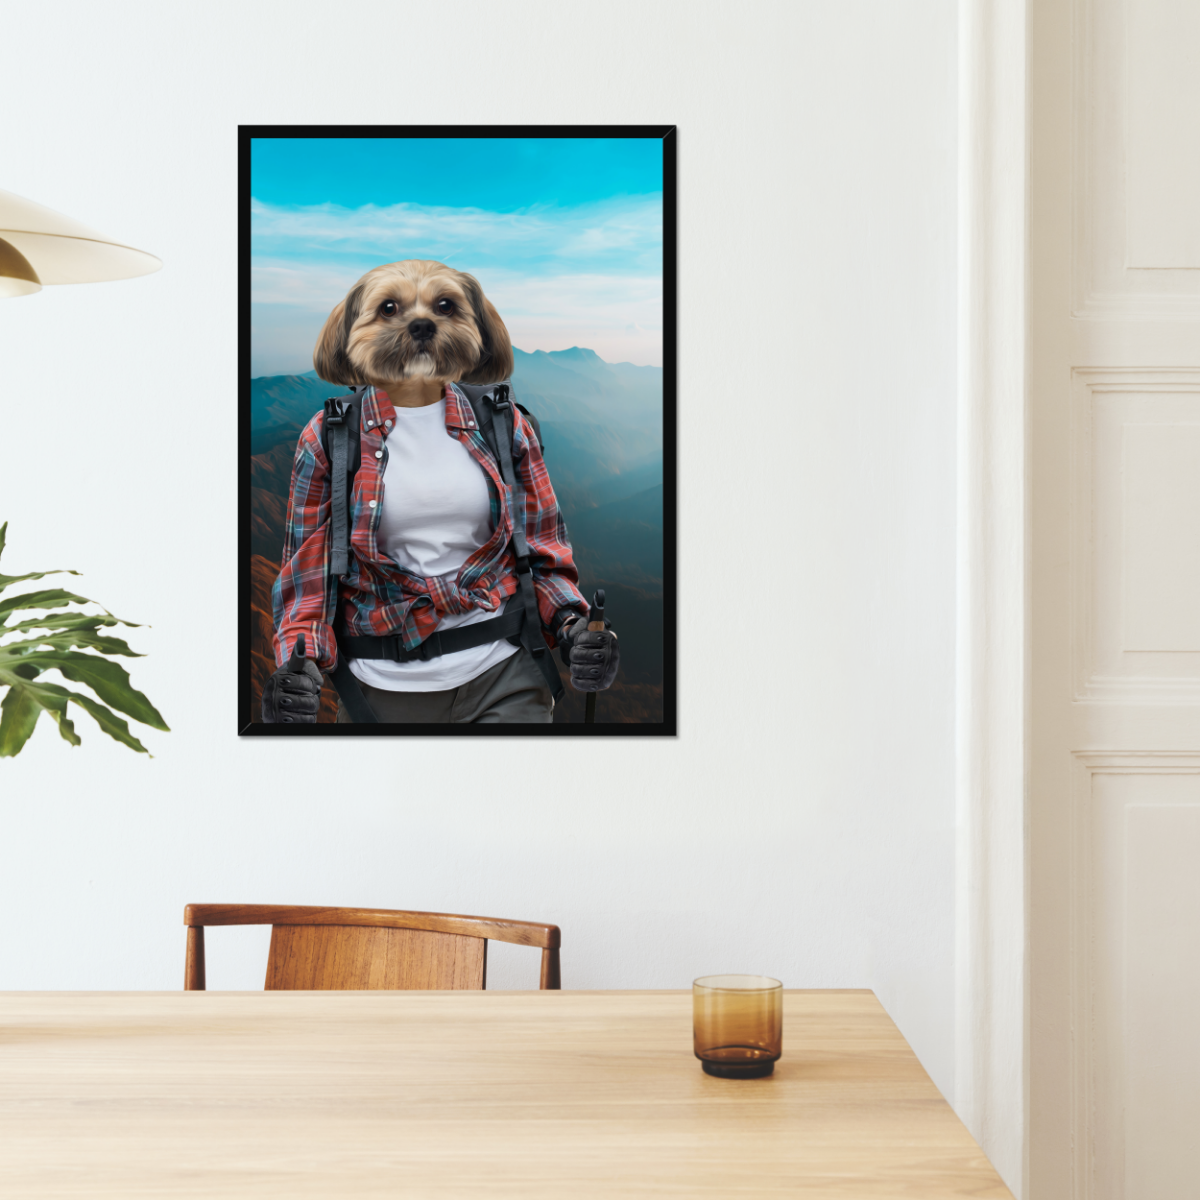 The Hiker: Custom Pet Portrait - Paw & Glory, paw and glory, noble cat portrait, dog face on portrait, renaissance pet portraits app, dog victorian painting, dog photo to art, pet artists uk, pet portrait